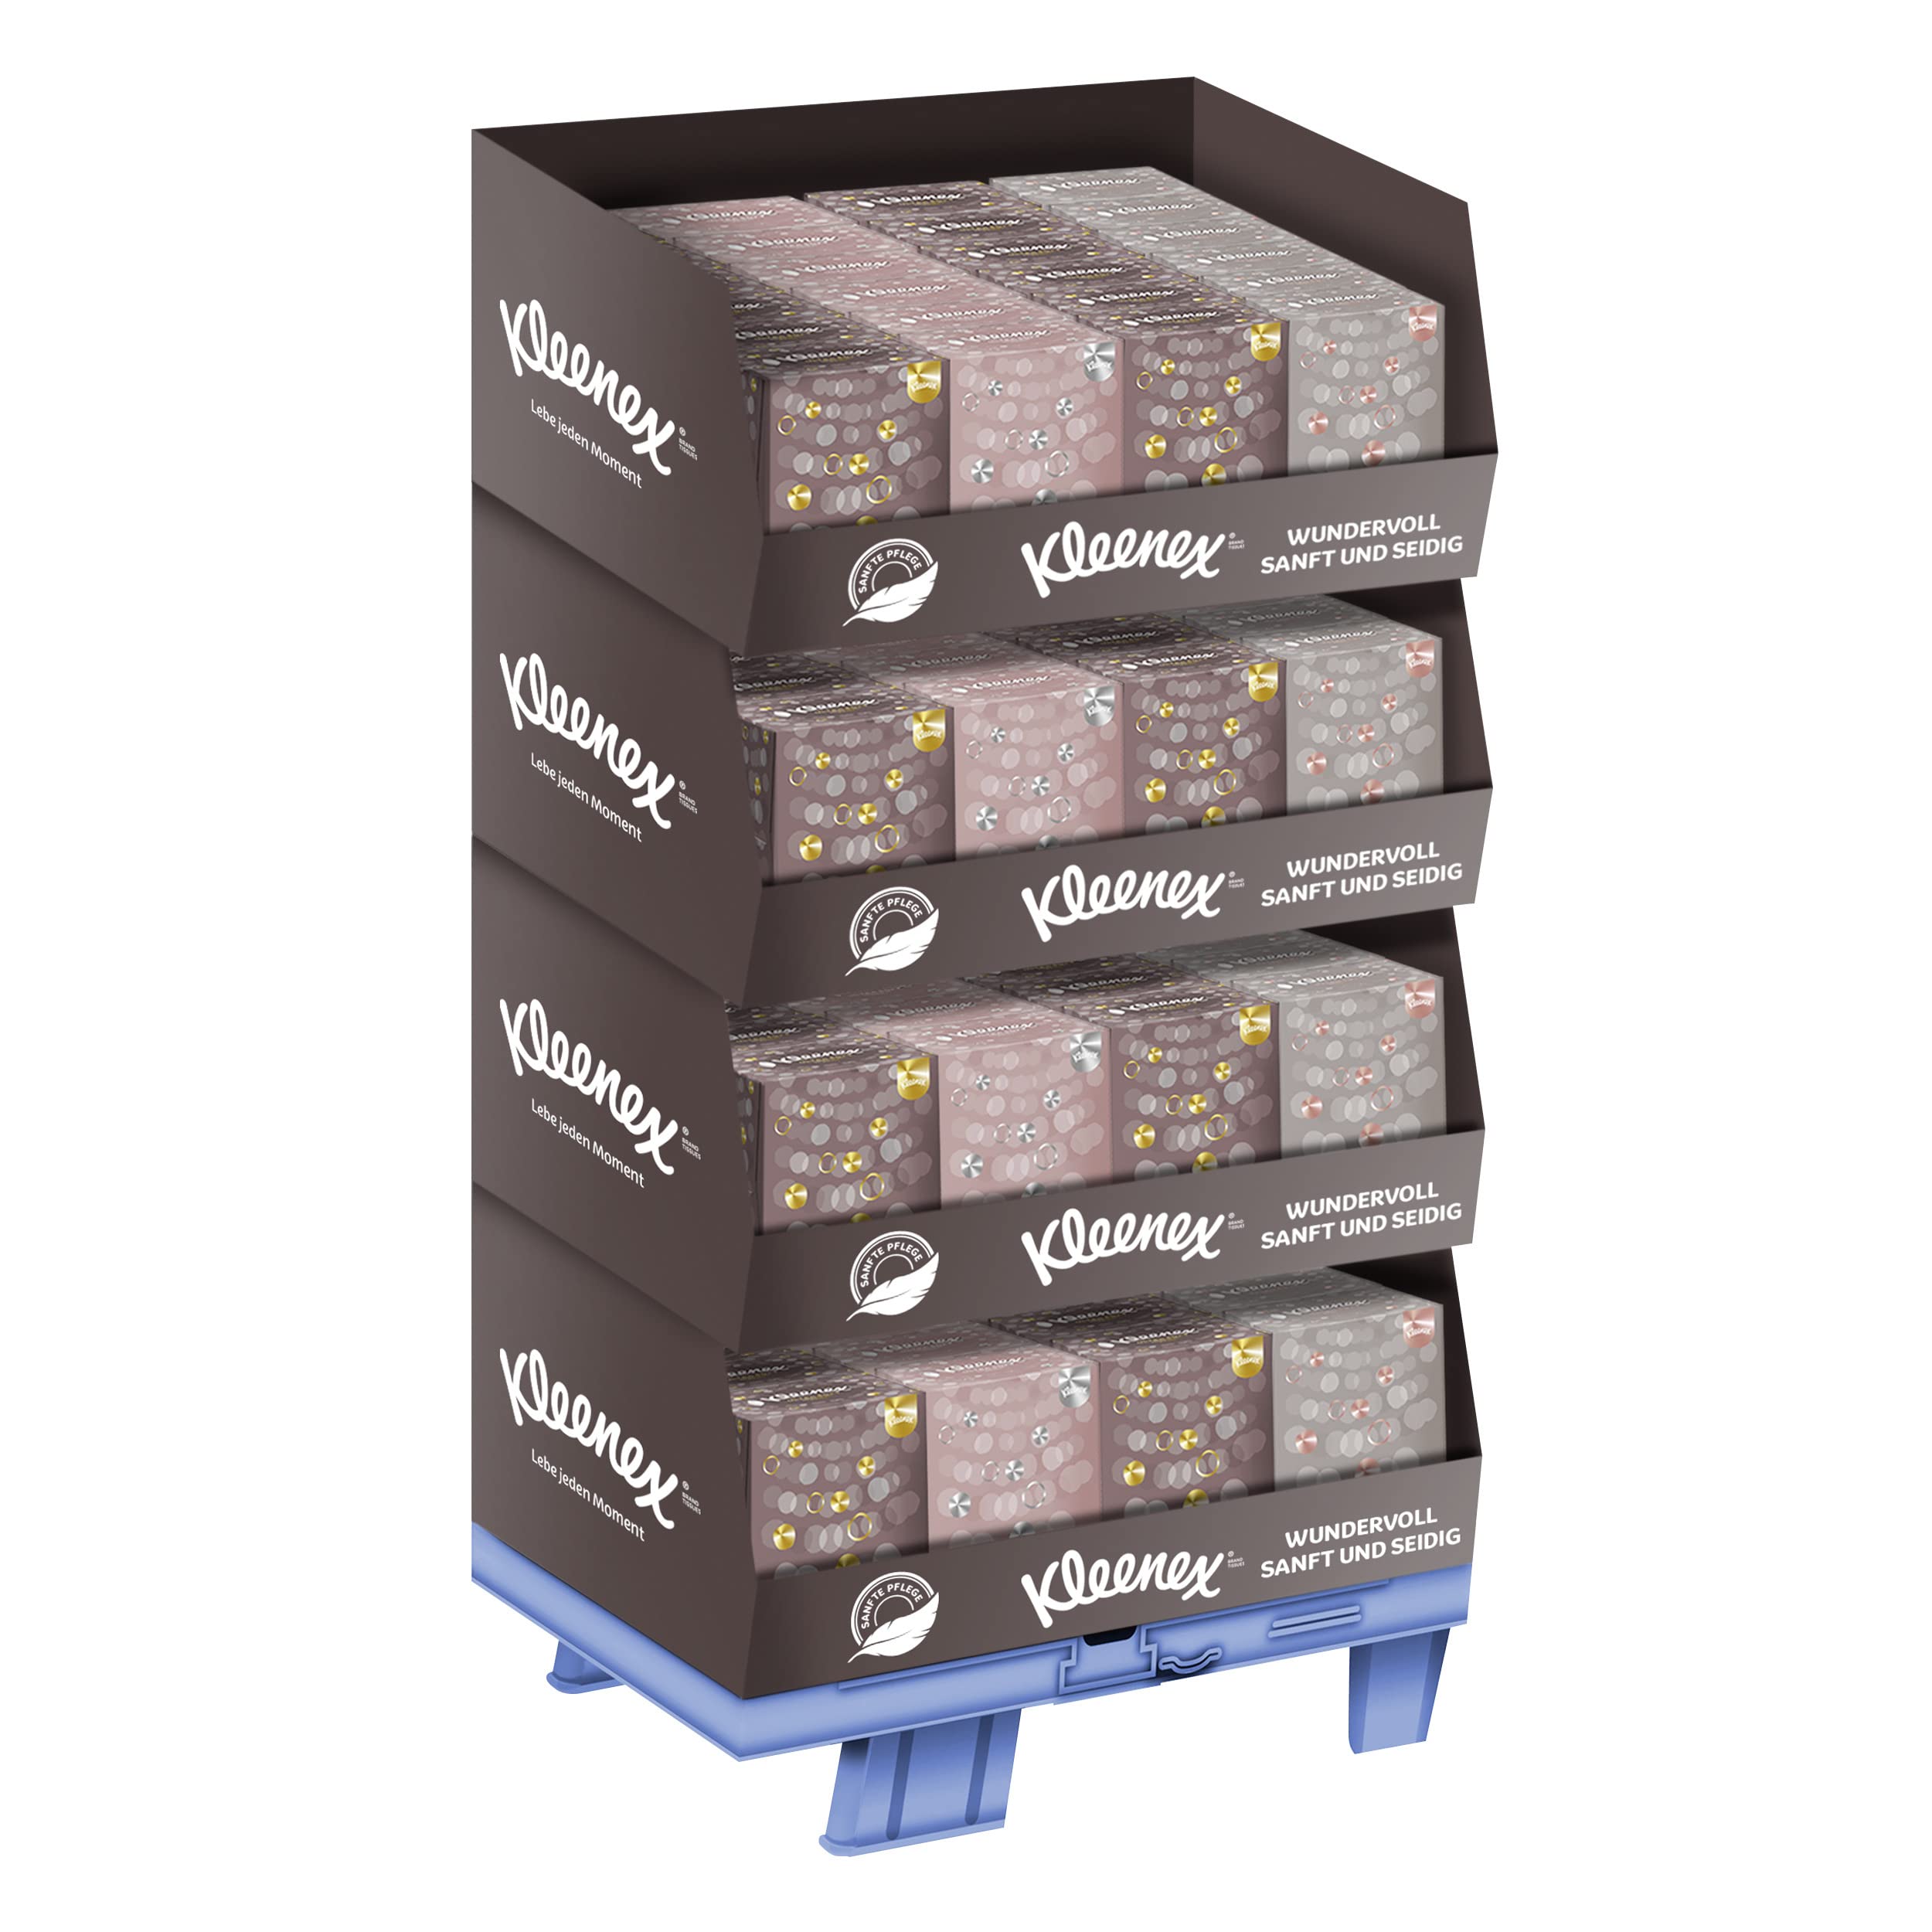 Kleenex Ultra Soft-Box Kosmetiktücher, Würfel-Display, 96 x 48 Tücher, Aufsteller aus Karton